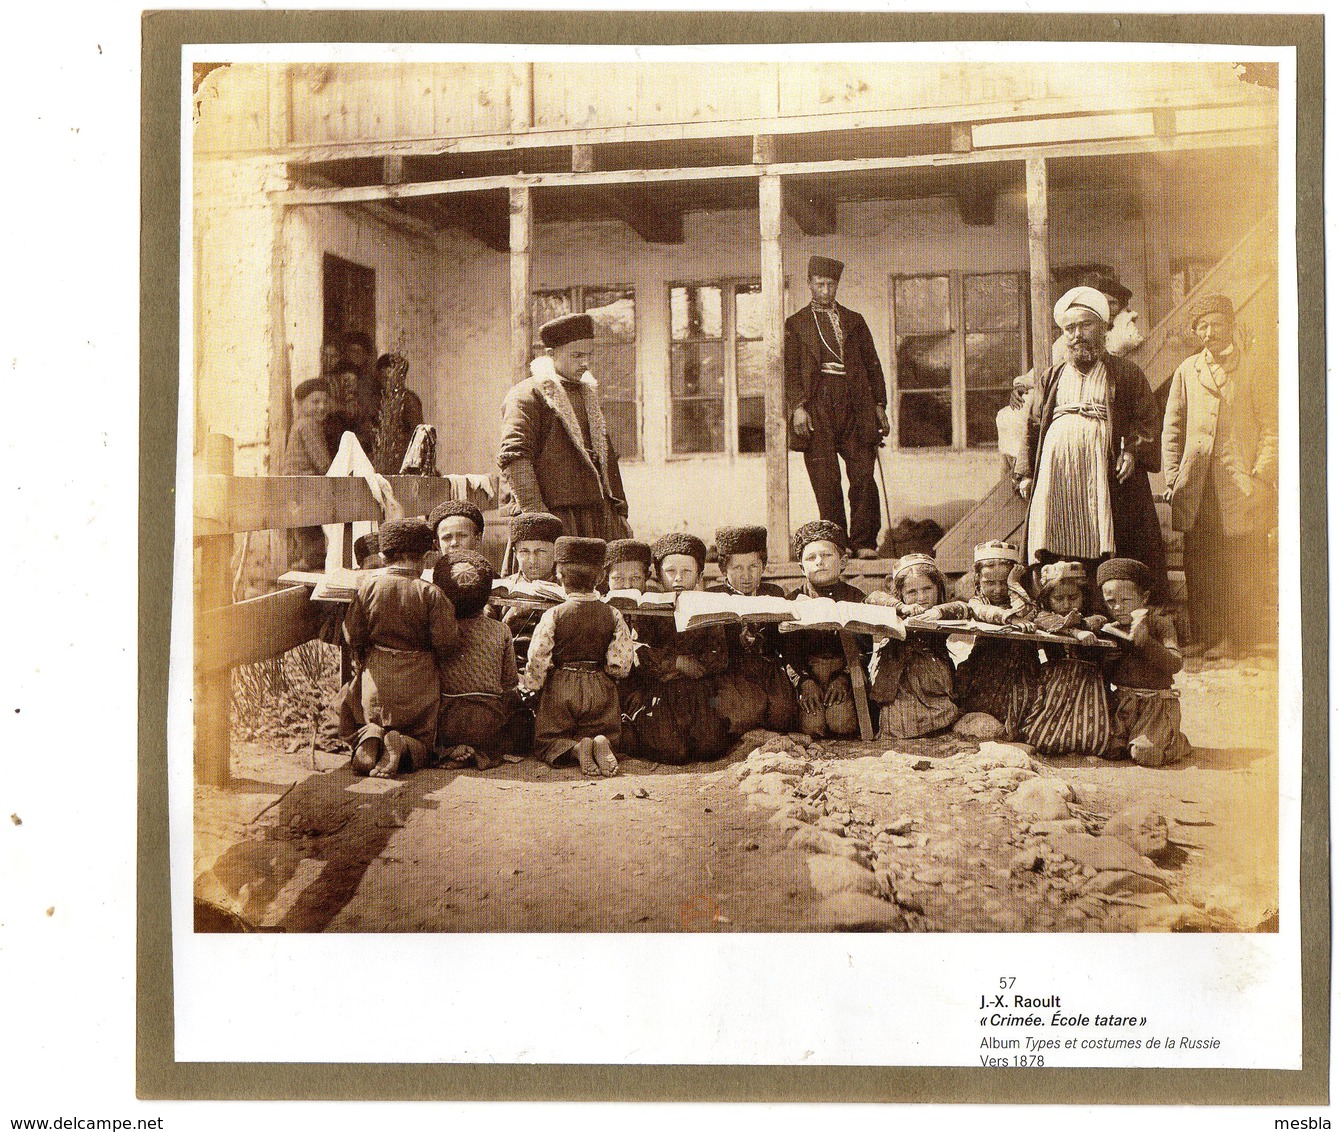 Reproduction D'une Photo De J.X. RAOULT  -  CRIMEE,  Ecole Tatare  (vers 1878) - Ethniques, Cultures